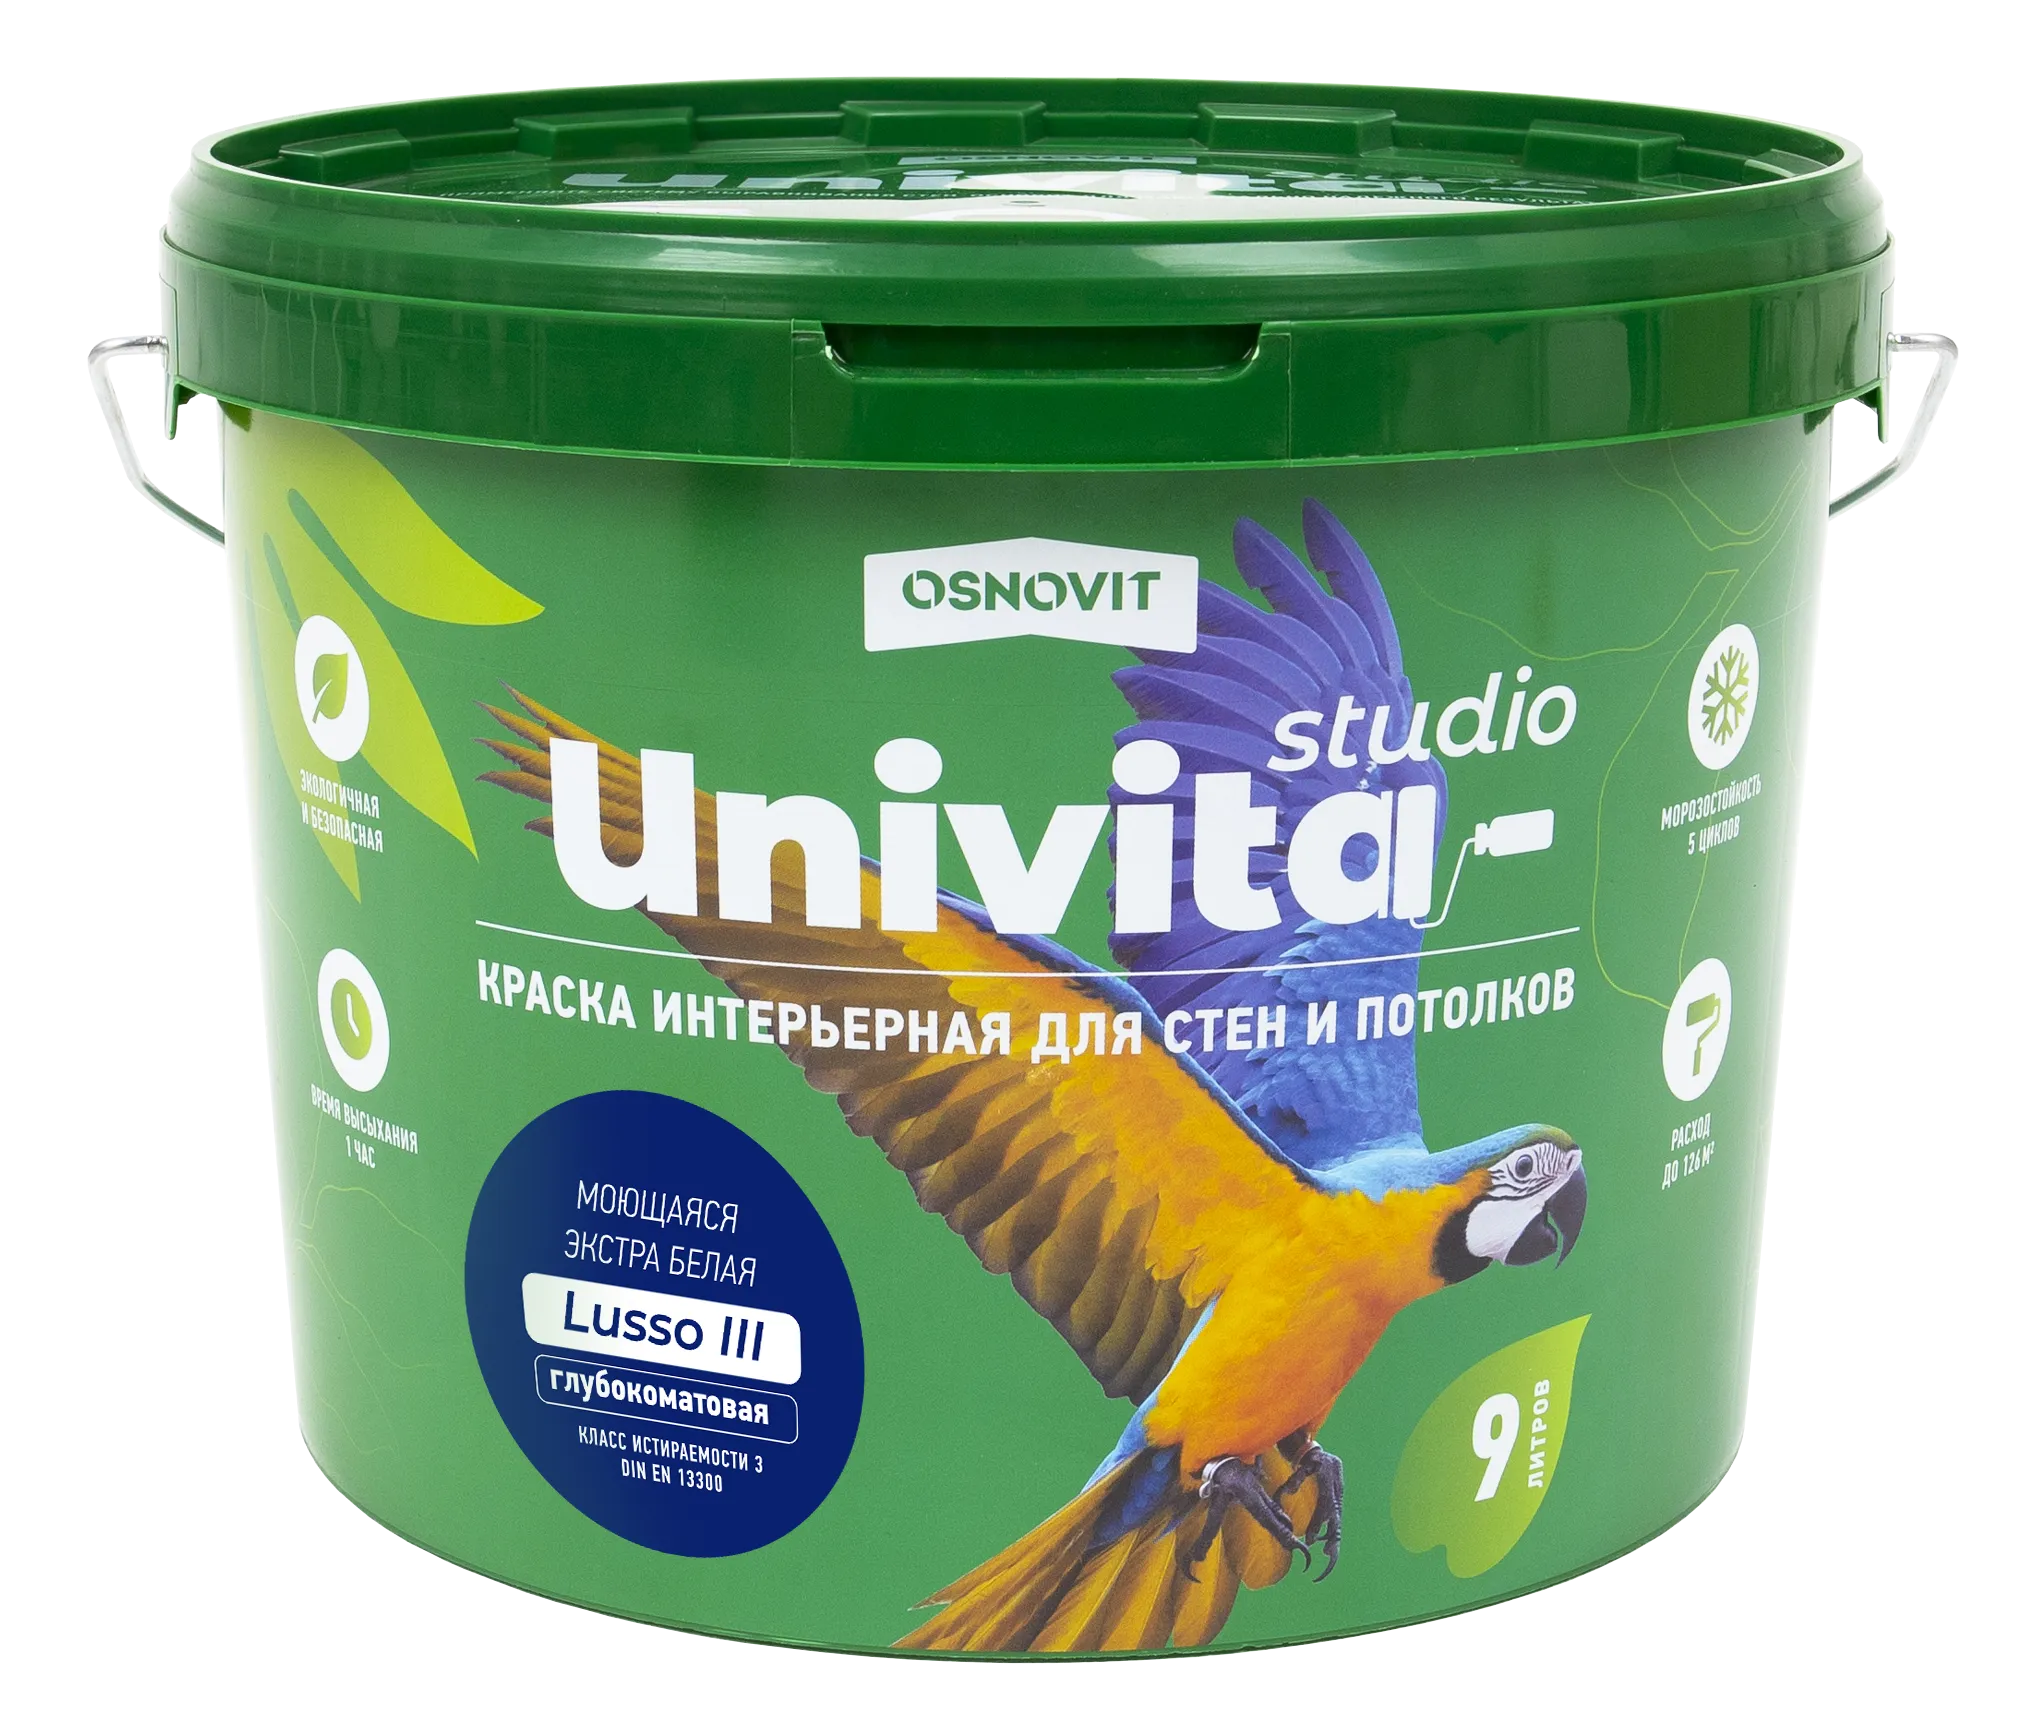 Интерьерная краска полуматовая моющаяся для стен и потолков ОСНОВИТ UNIVITA STUDIO Lusso III САс992 CМ2 (База C) 2,7 л